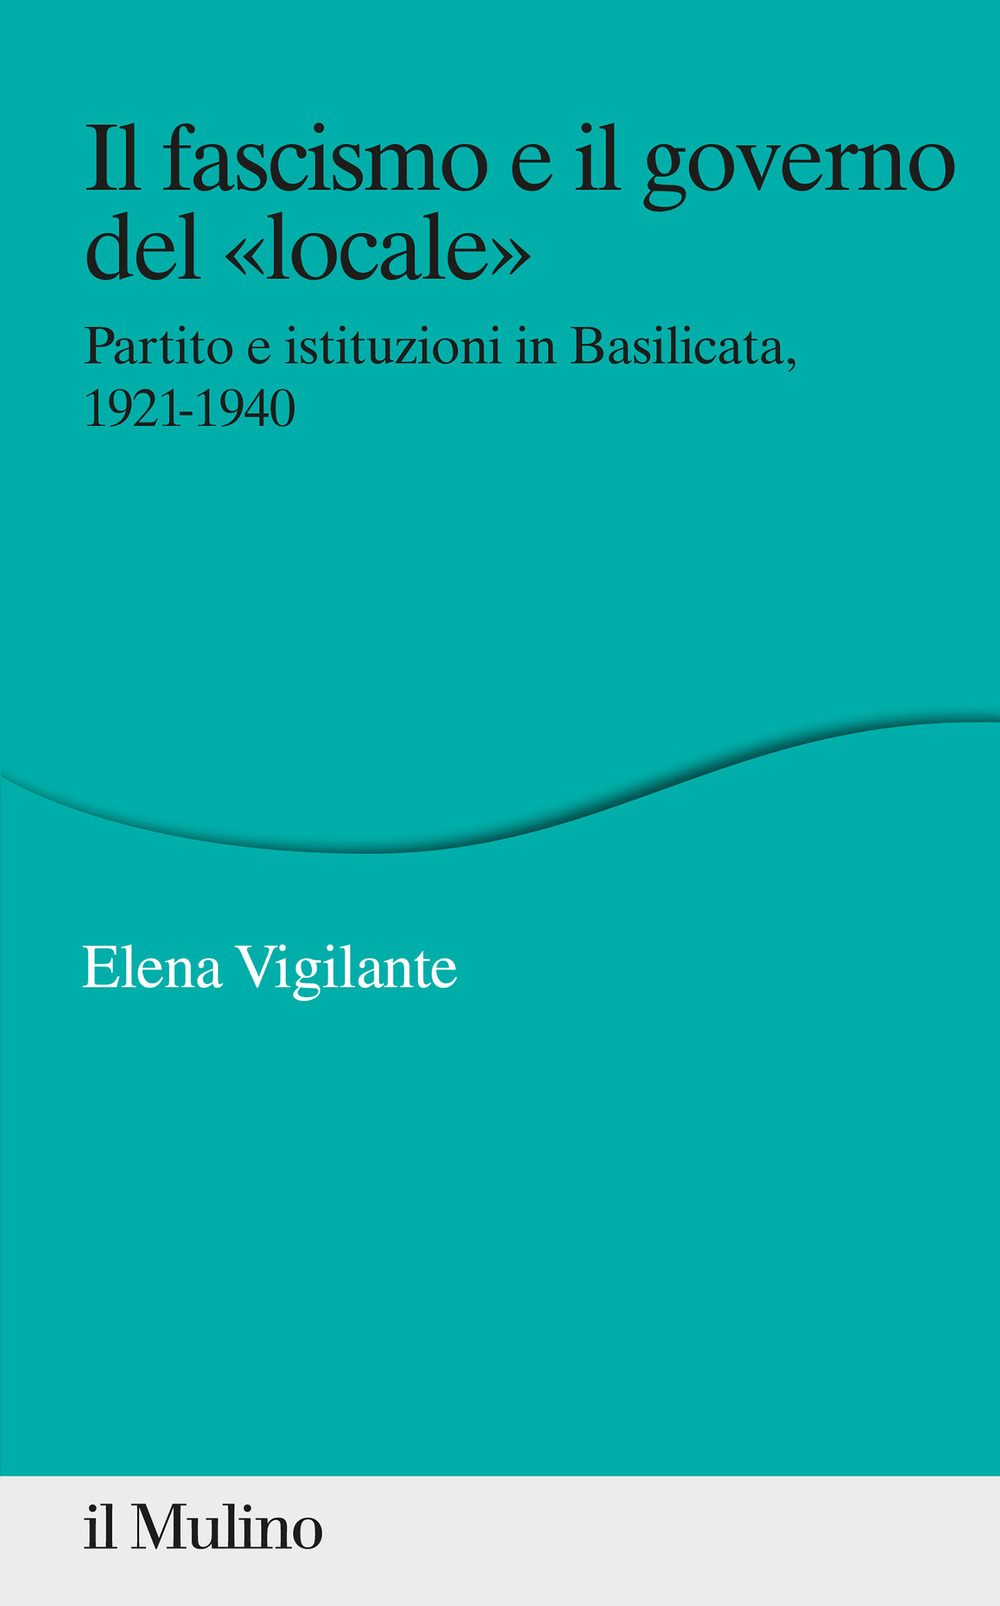 Il fascismo e il governo del «locale». Partito e istituzioni in Basilicata. 1921-1940